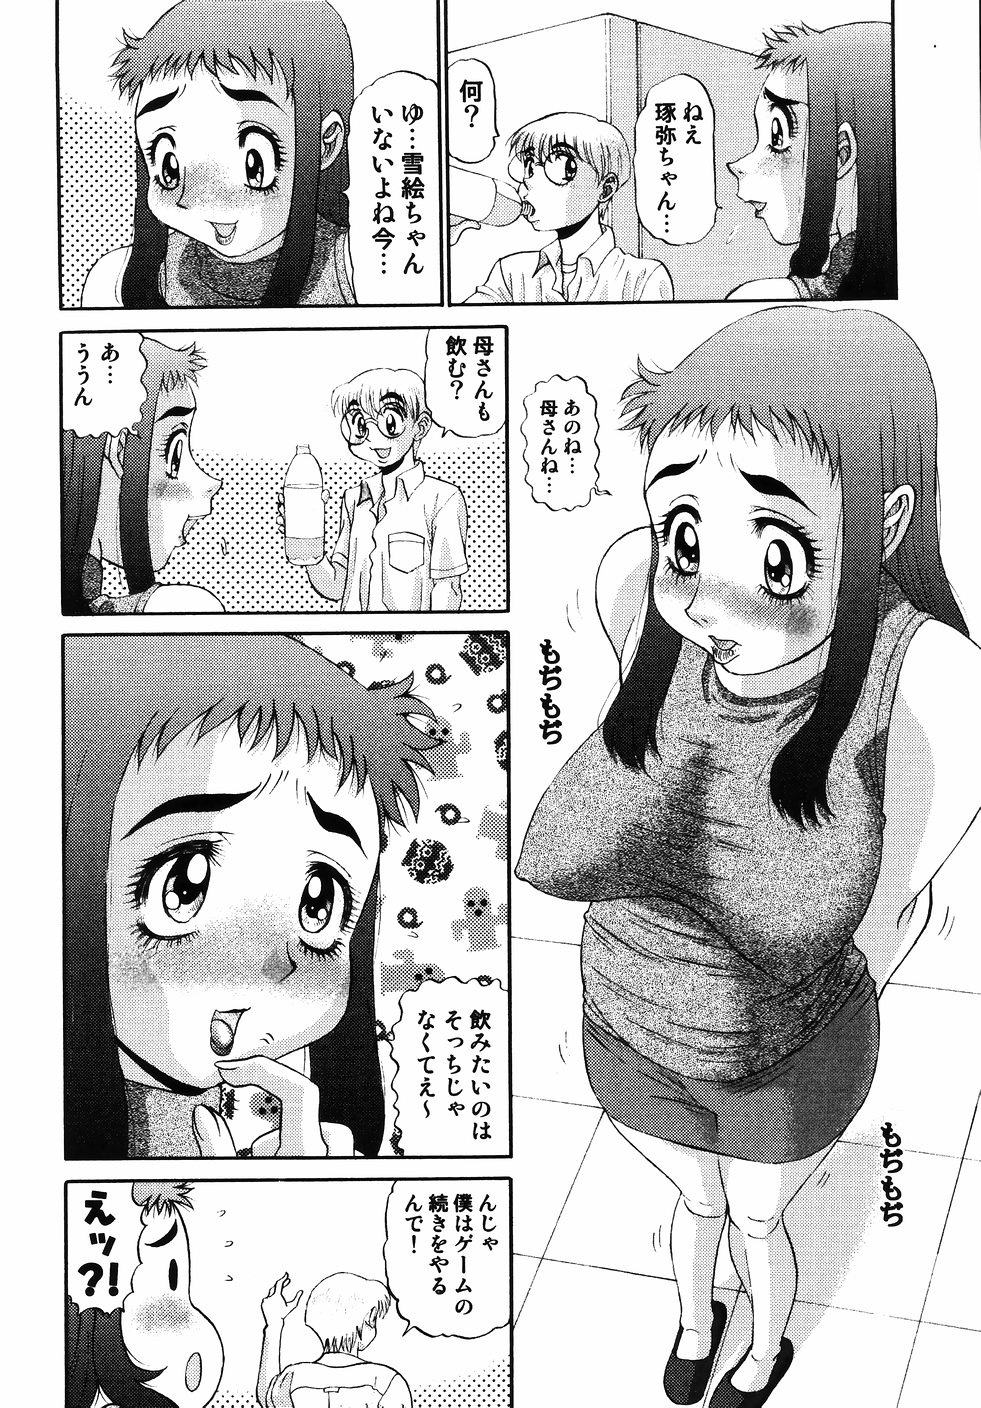 [PJ-1] Nozomi 2 page 42 full